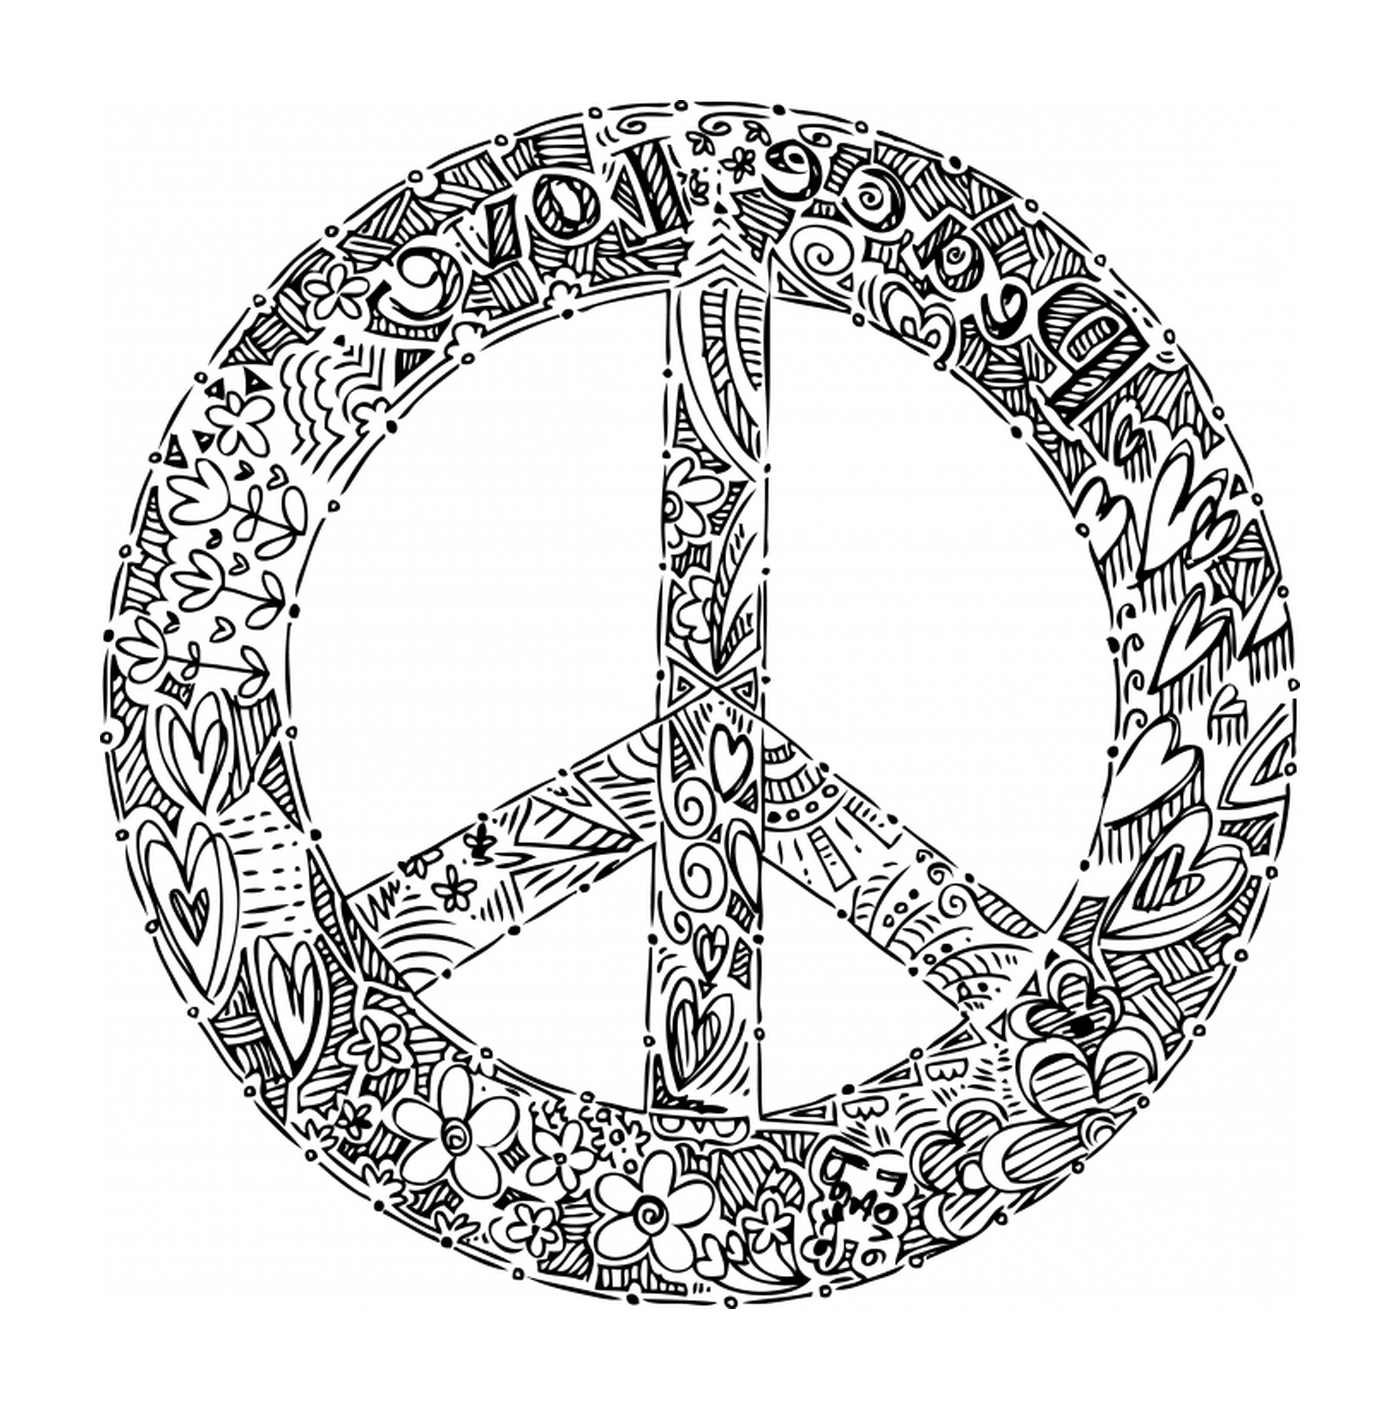  Paz y amor, logo 